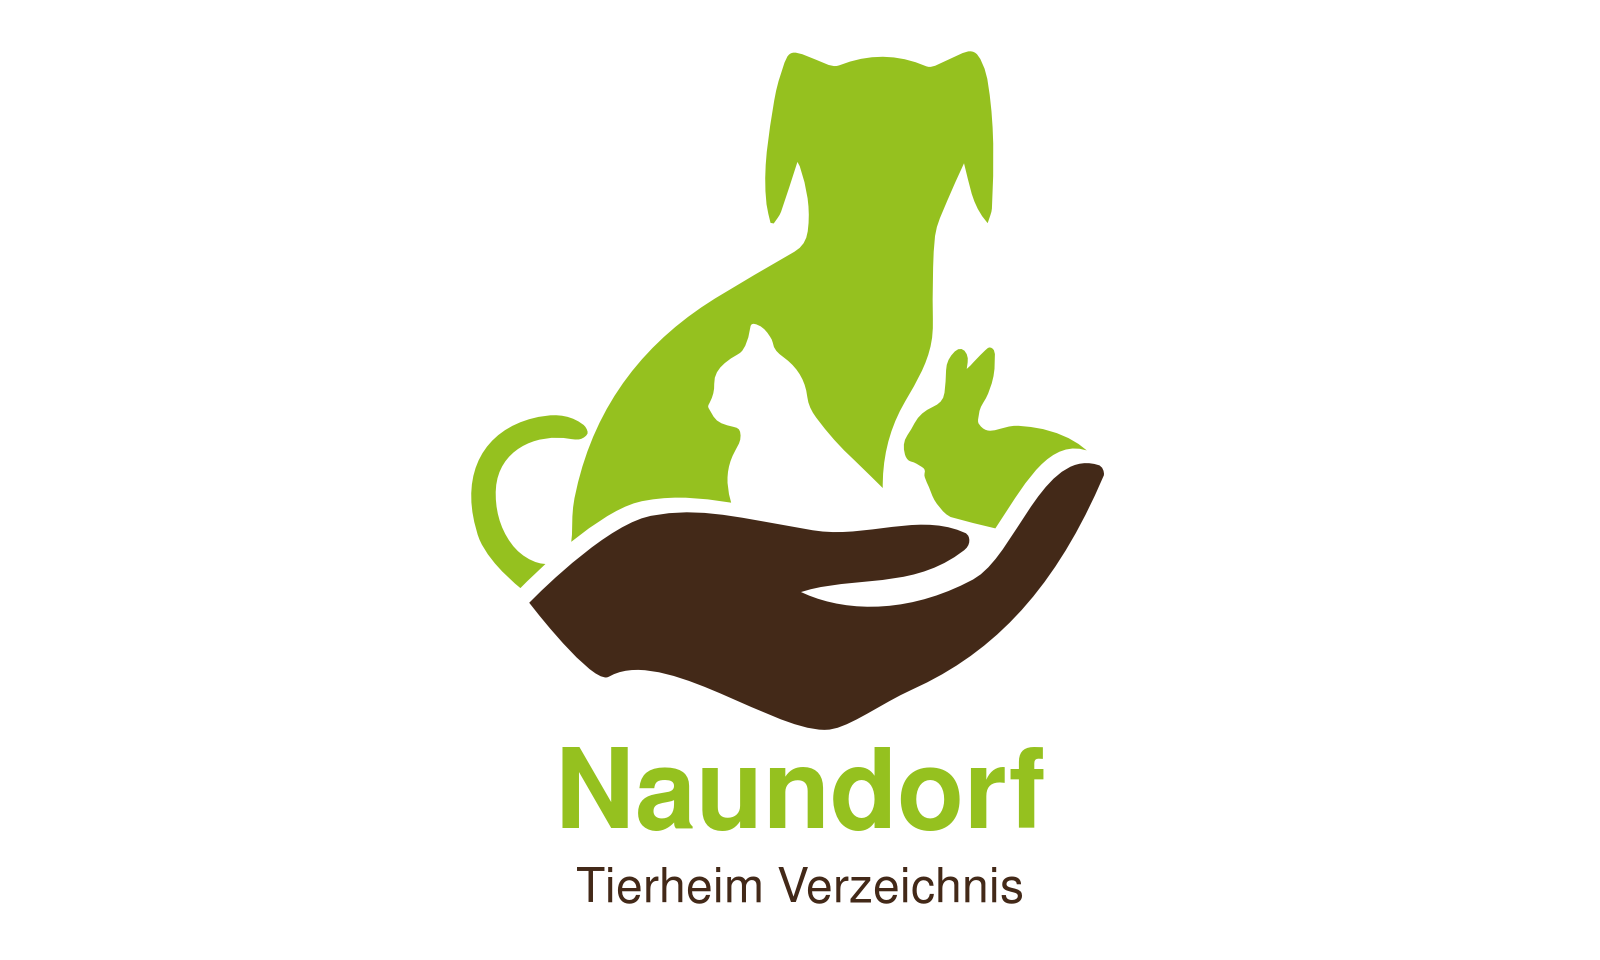 Tierheim Naundorf